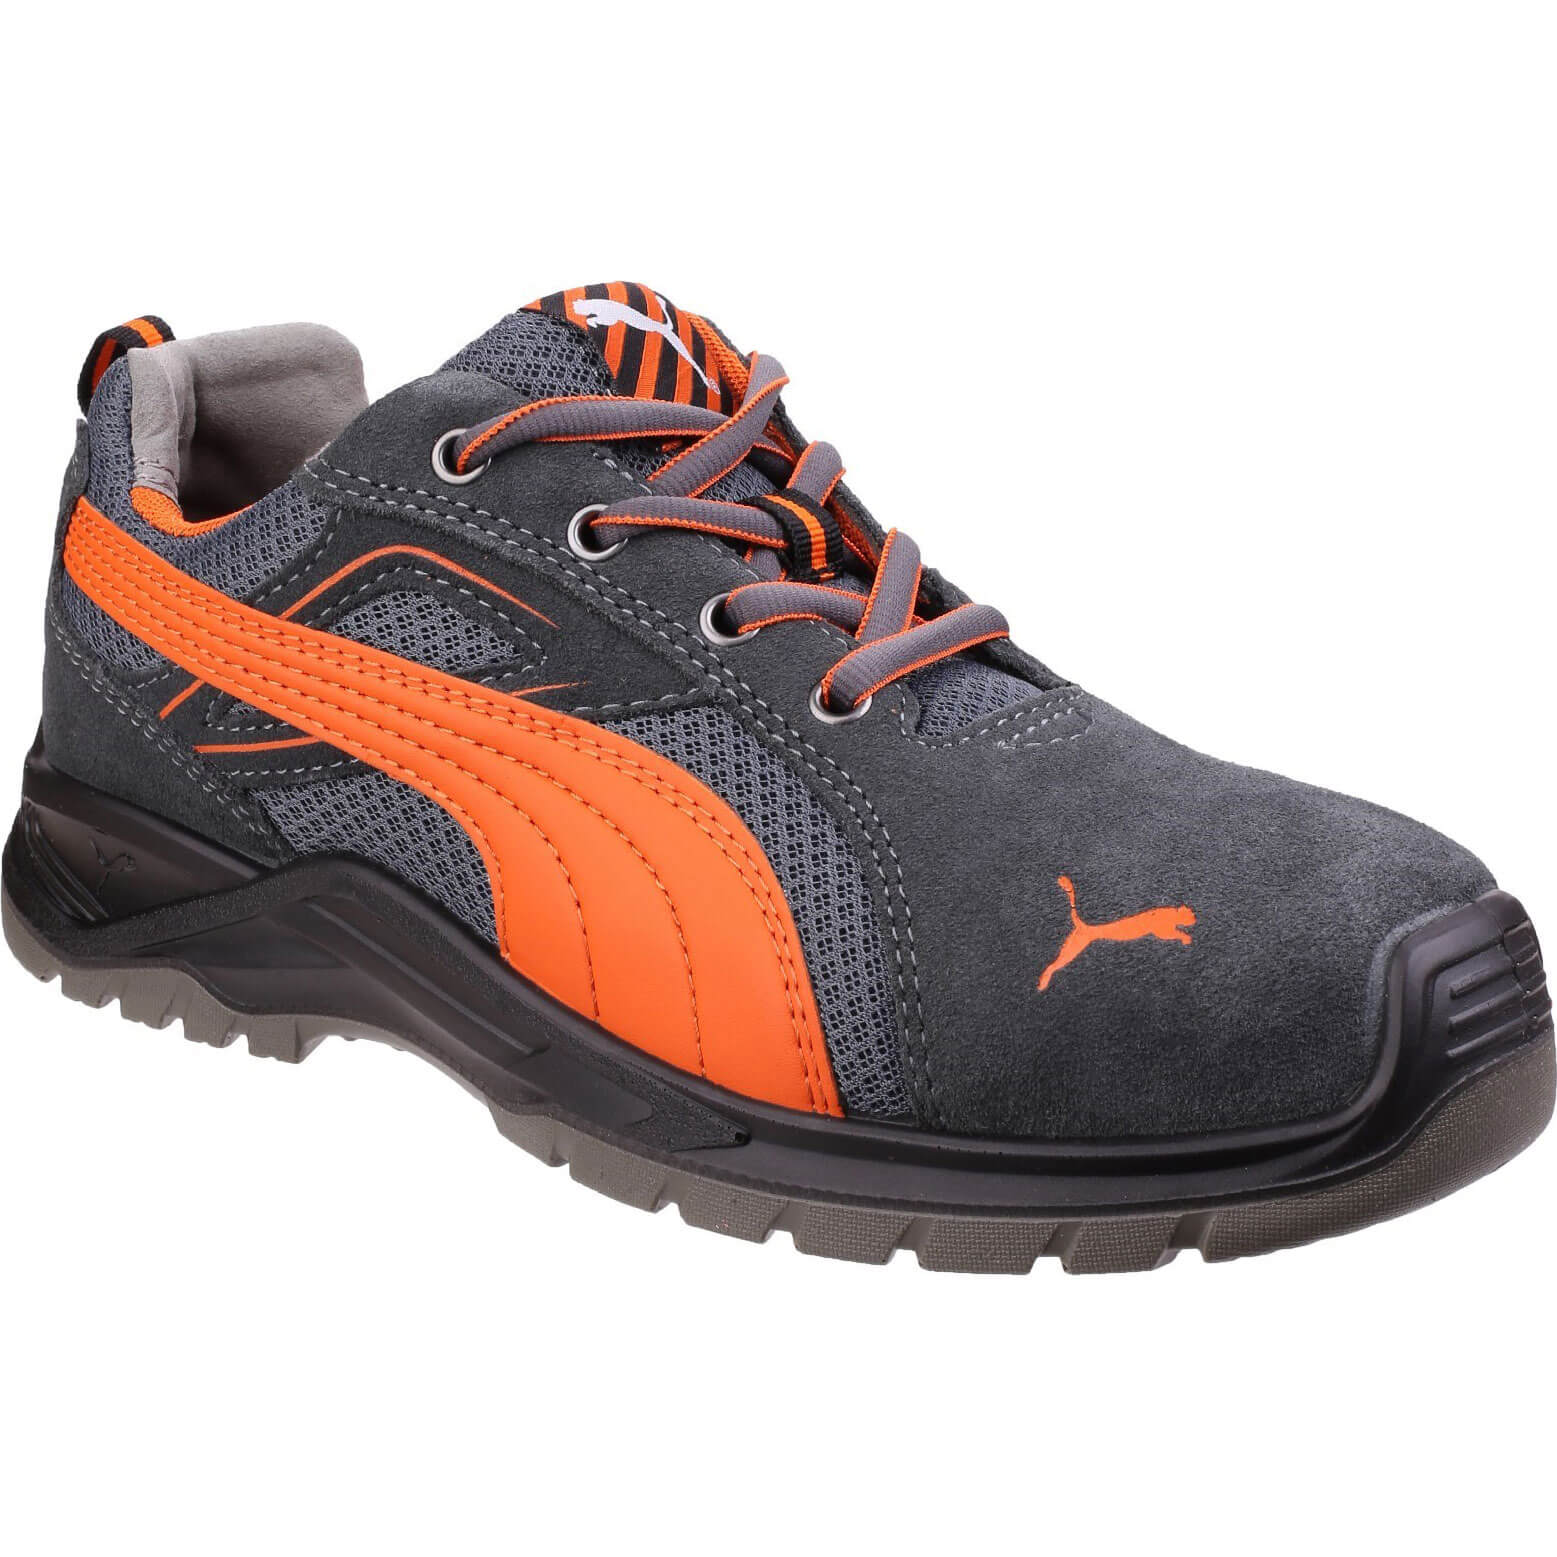 Image of Puma Safety Omni Sky Low Safety Shoe Orange Size 8